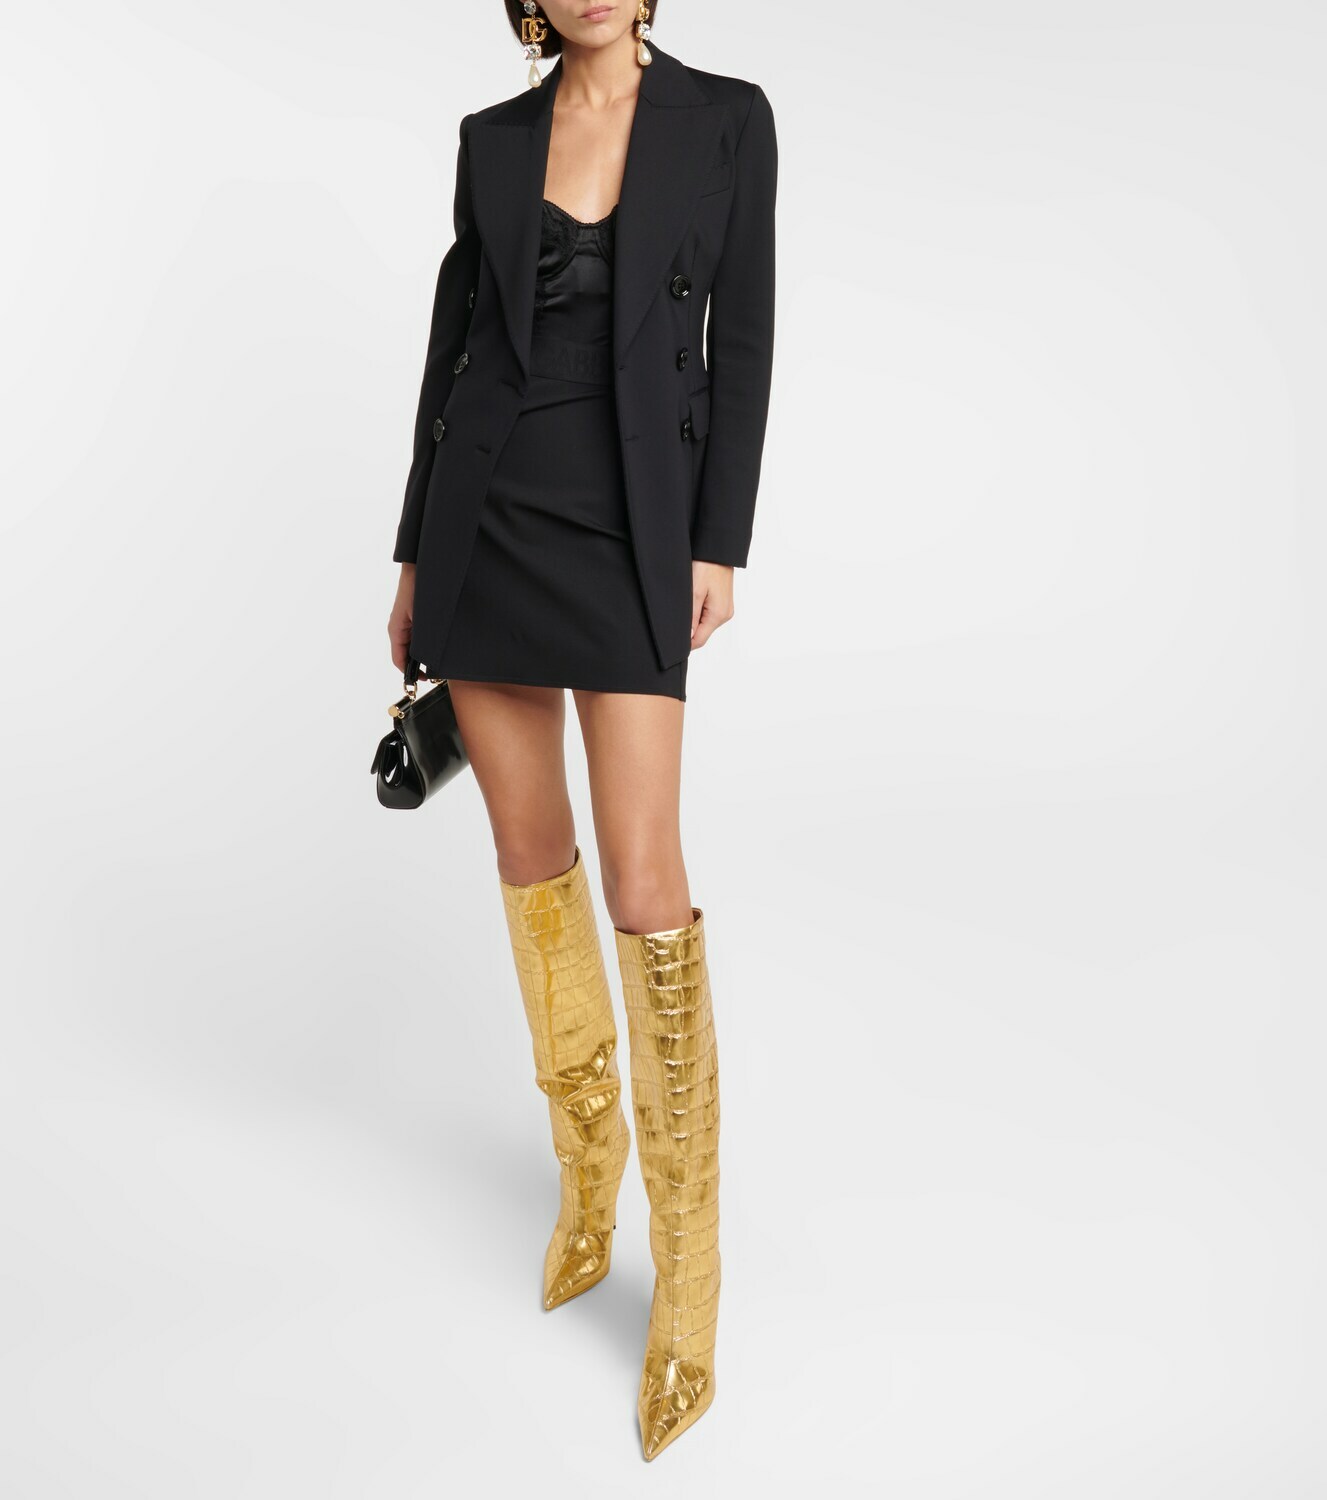 Dolce&Gabbana - Croc-effect leather knee-high boots Dolce & Gabbana